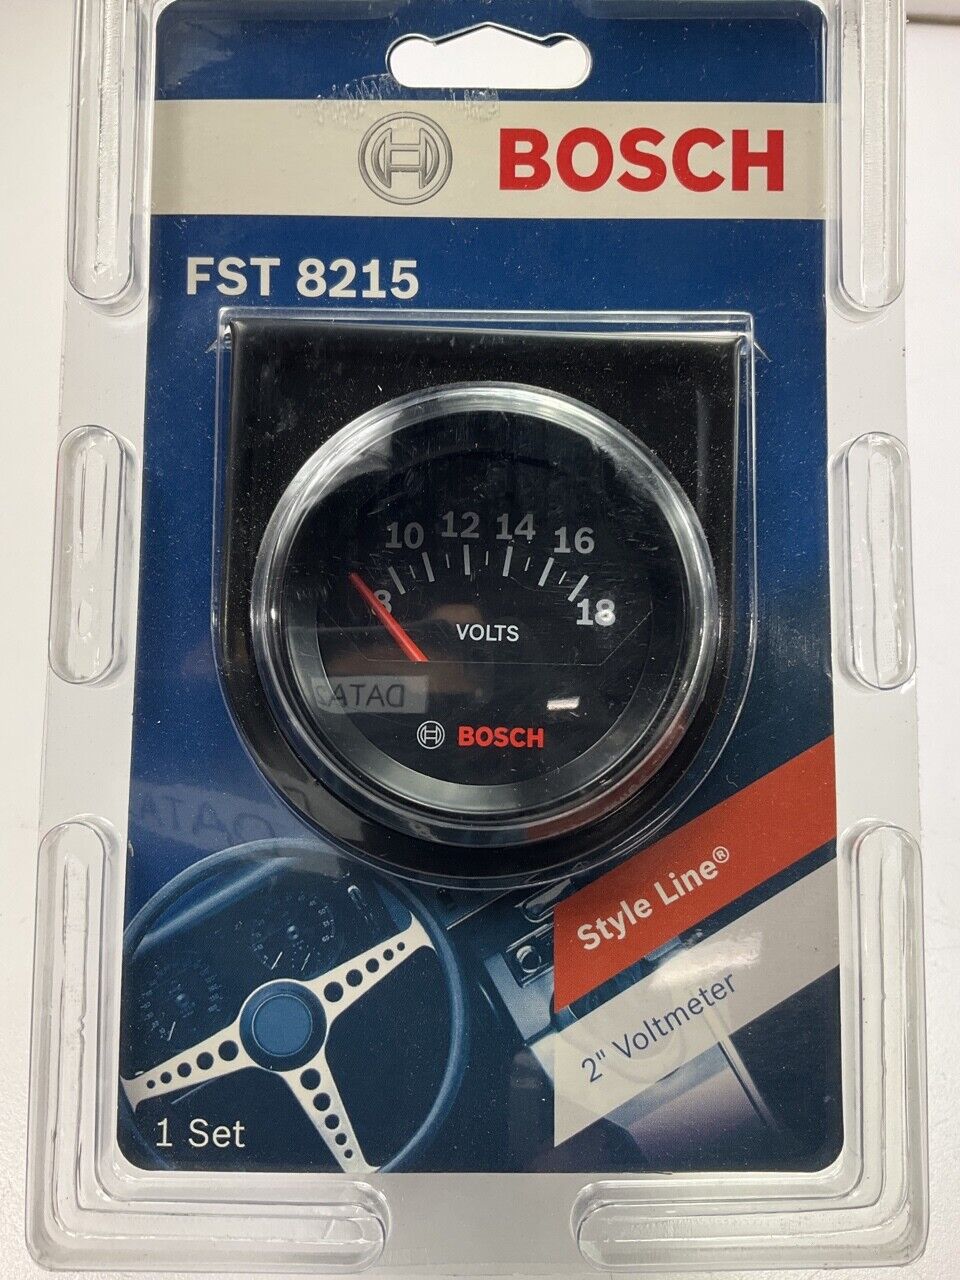 Bosch FST8215 Gauges Style Line 2  Electrical Voltmeter Gauge (Black Face)